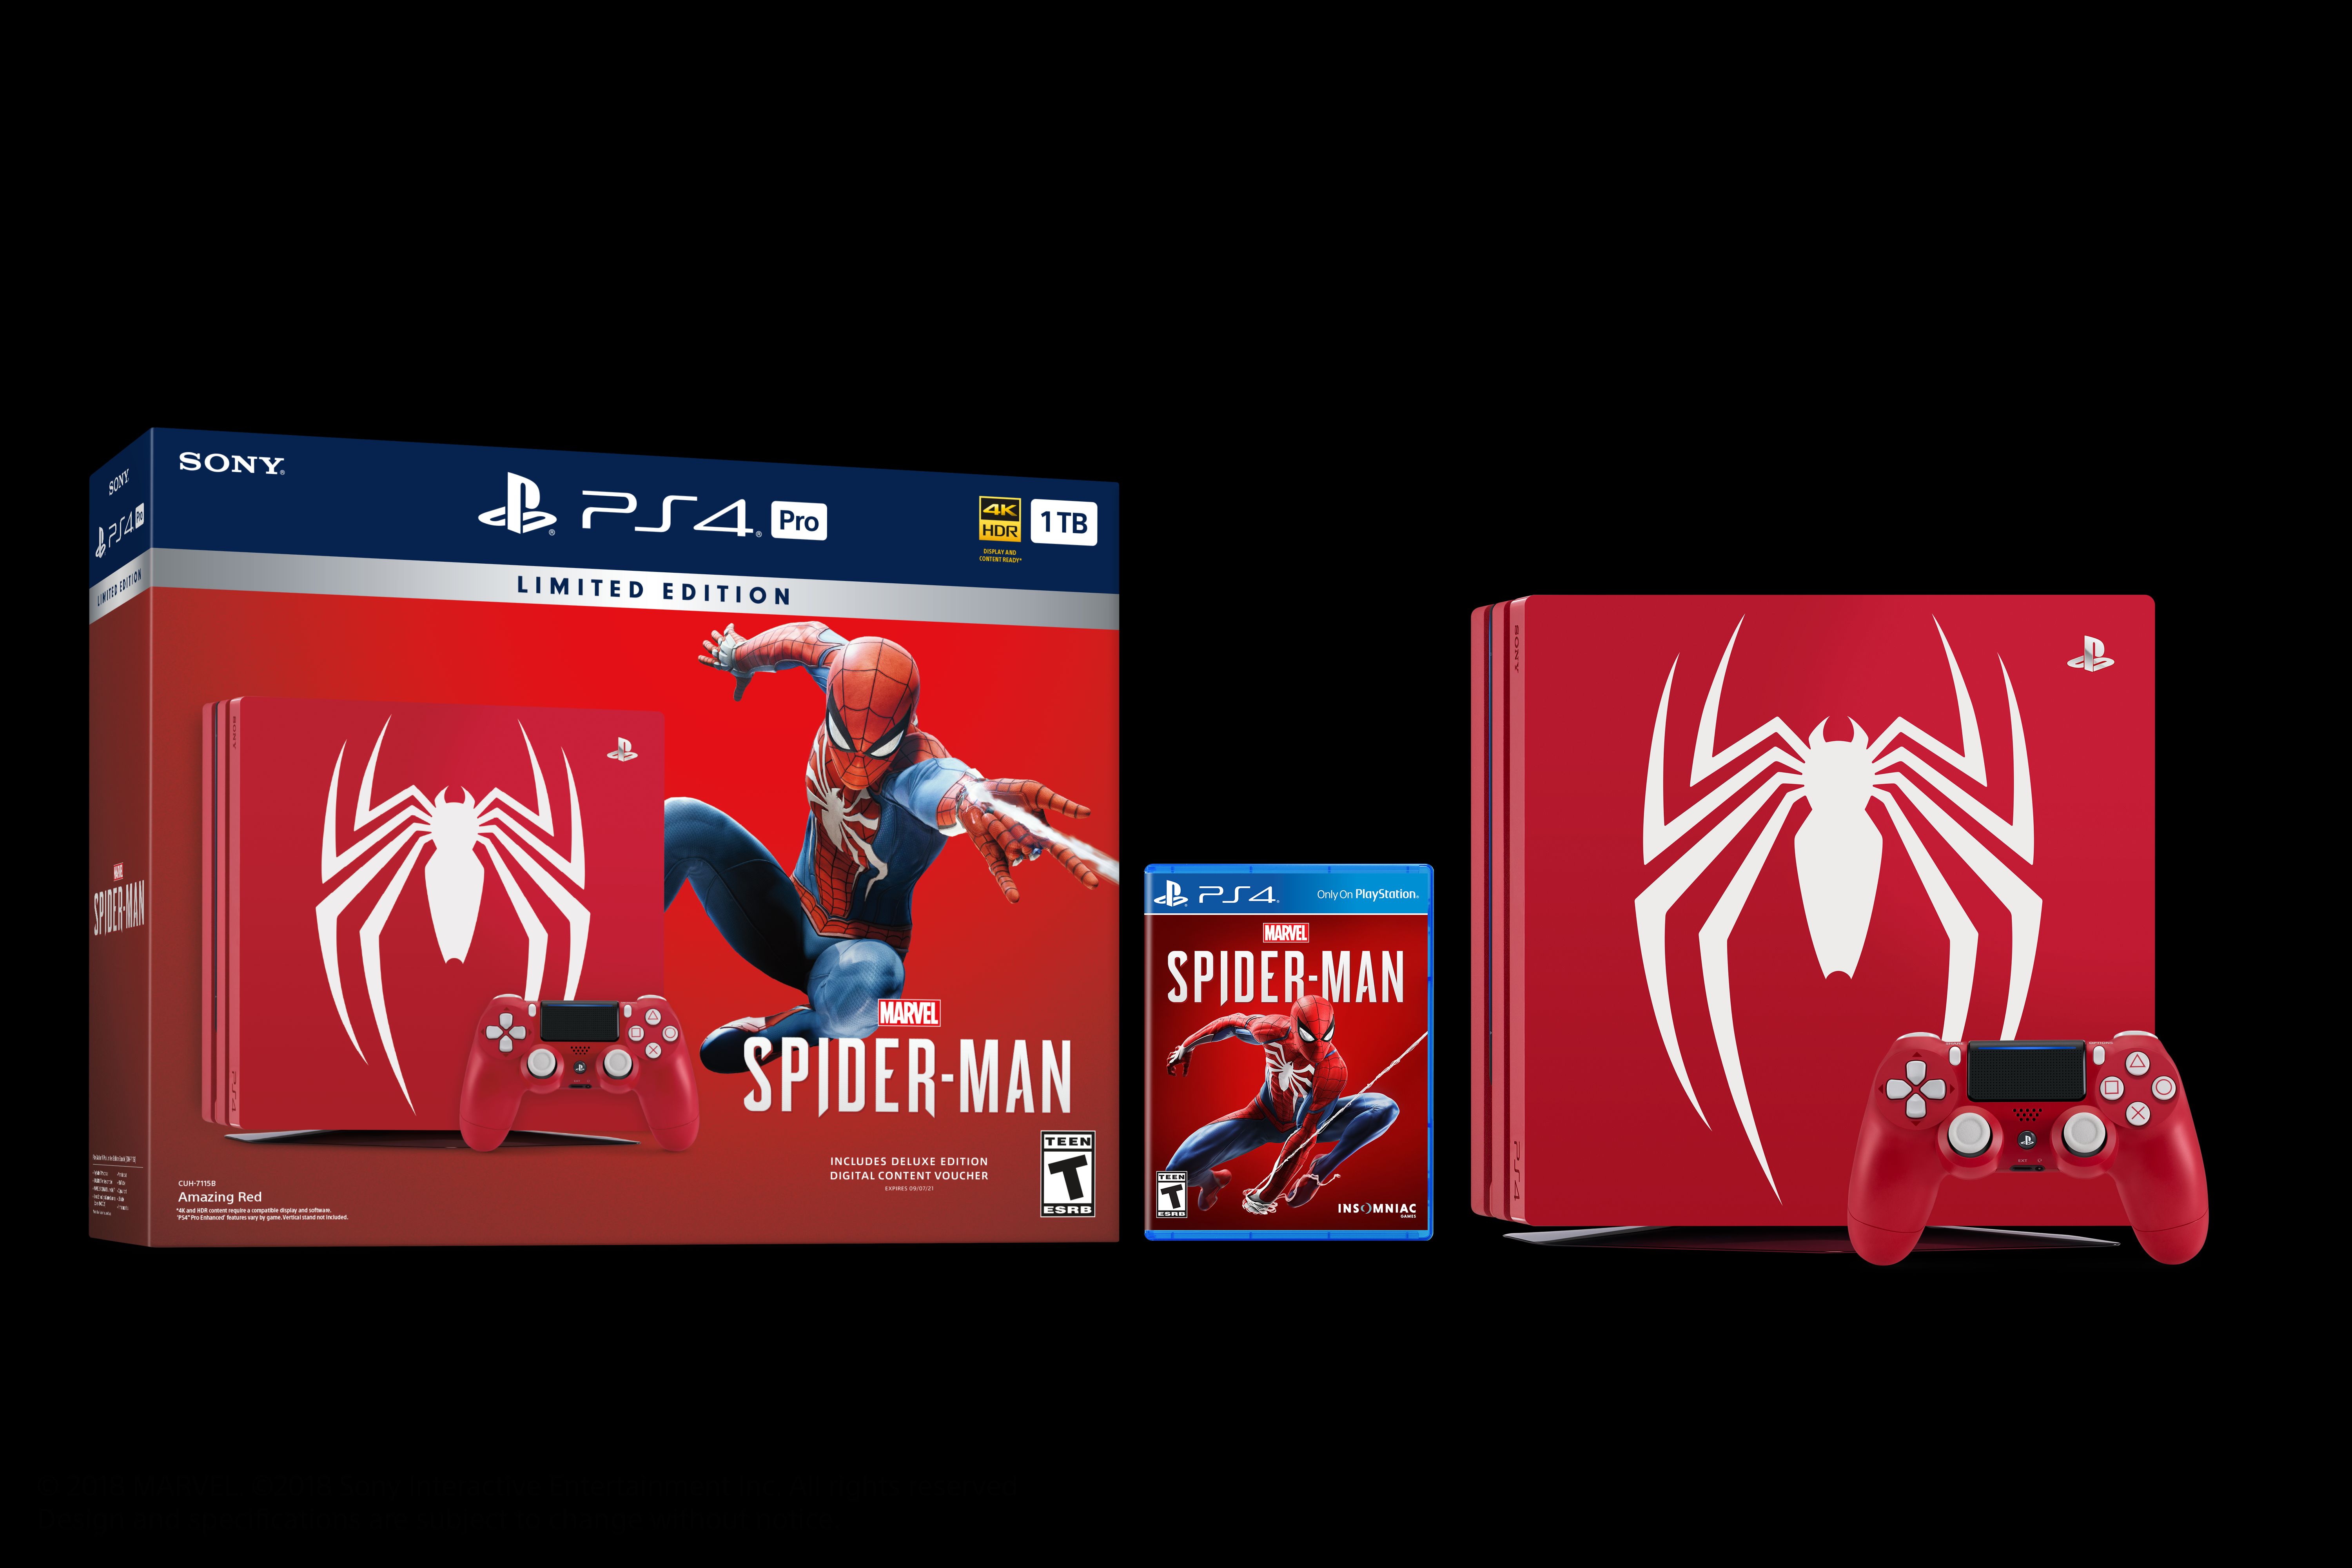 Marvel's Spider-Man PS4 Pro bundle